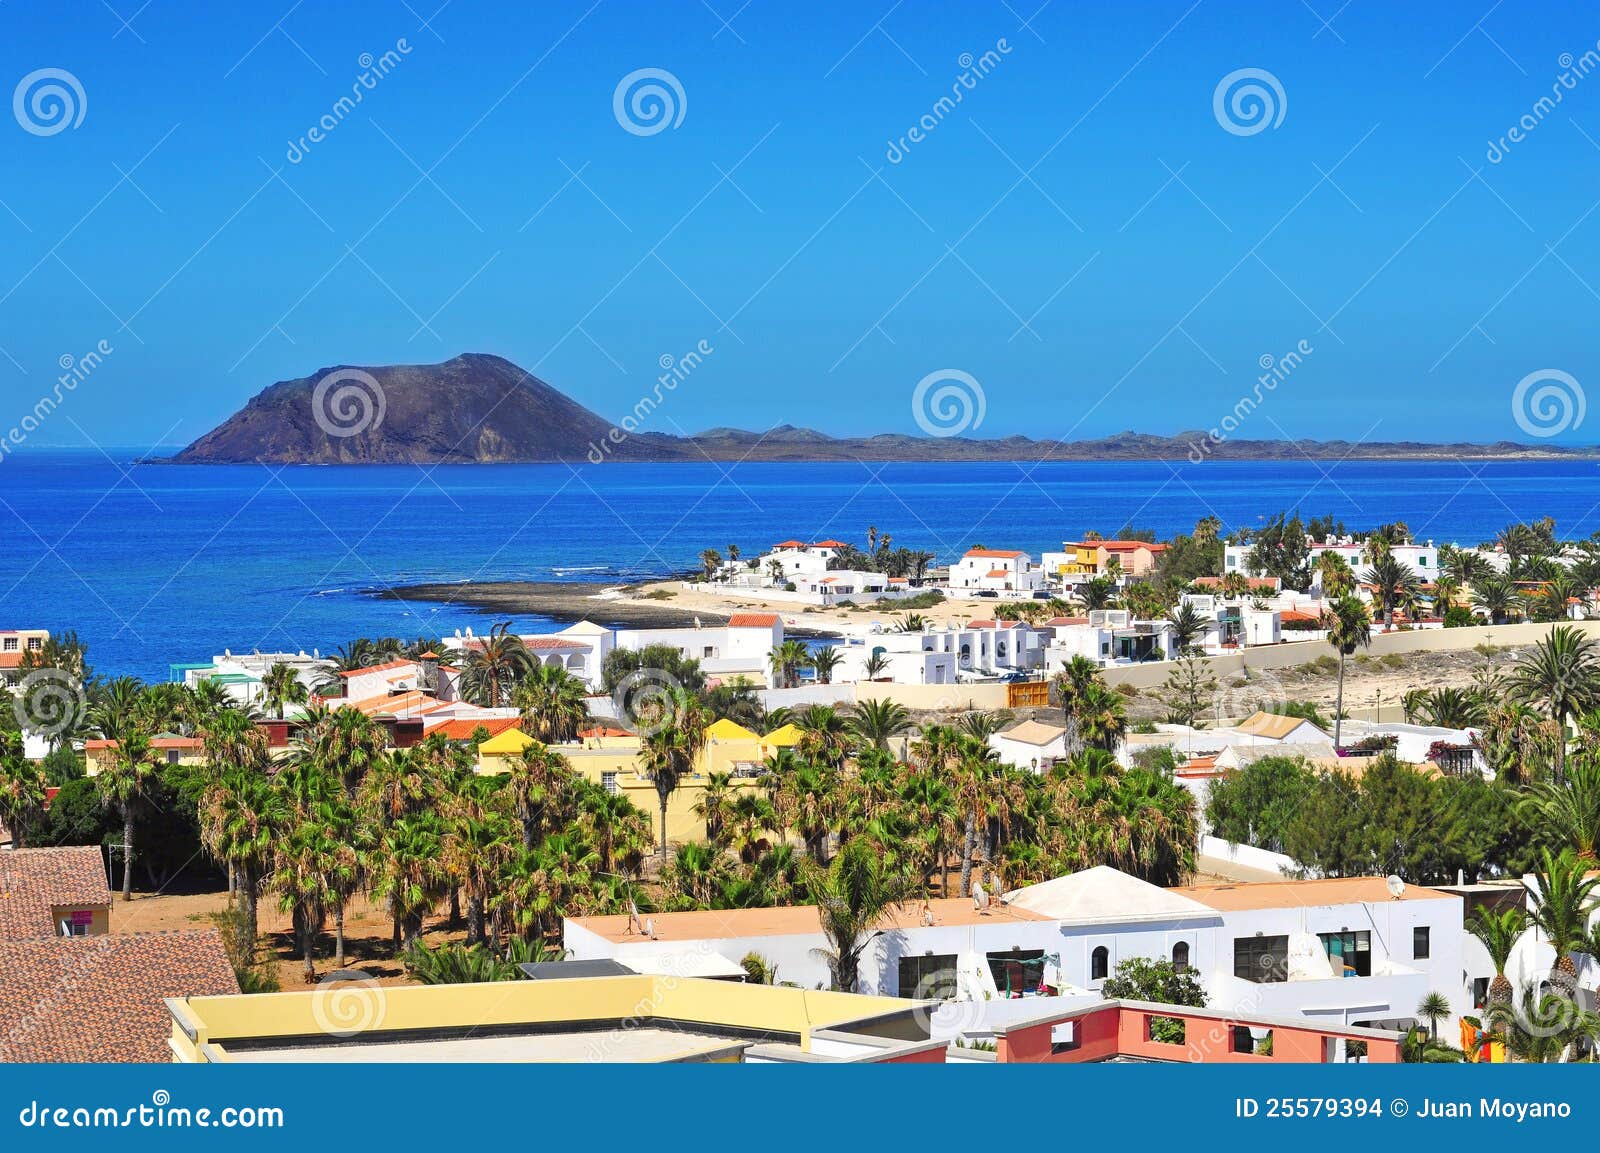 lobos island and corralejo in fuerteventura, spain